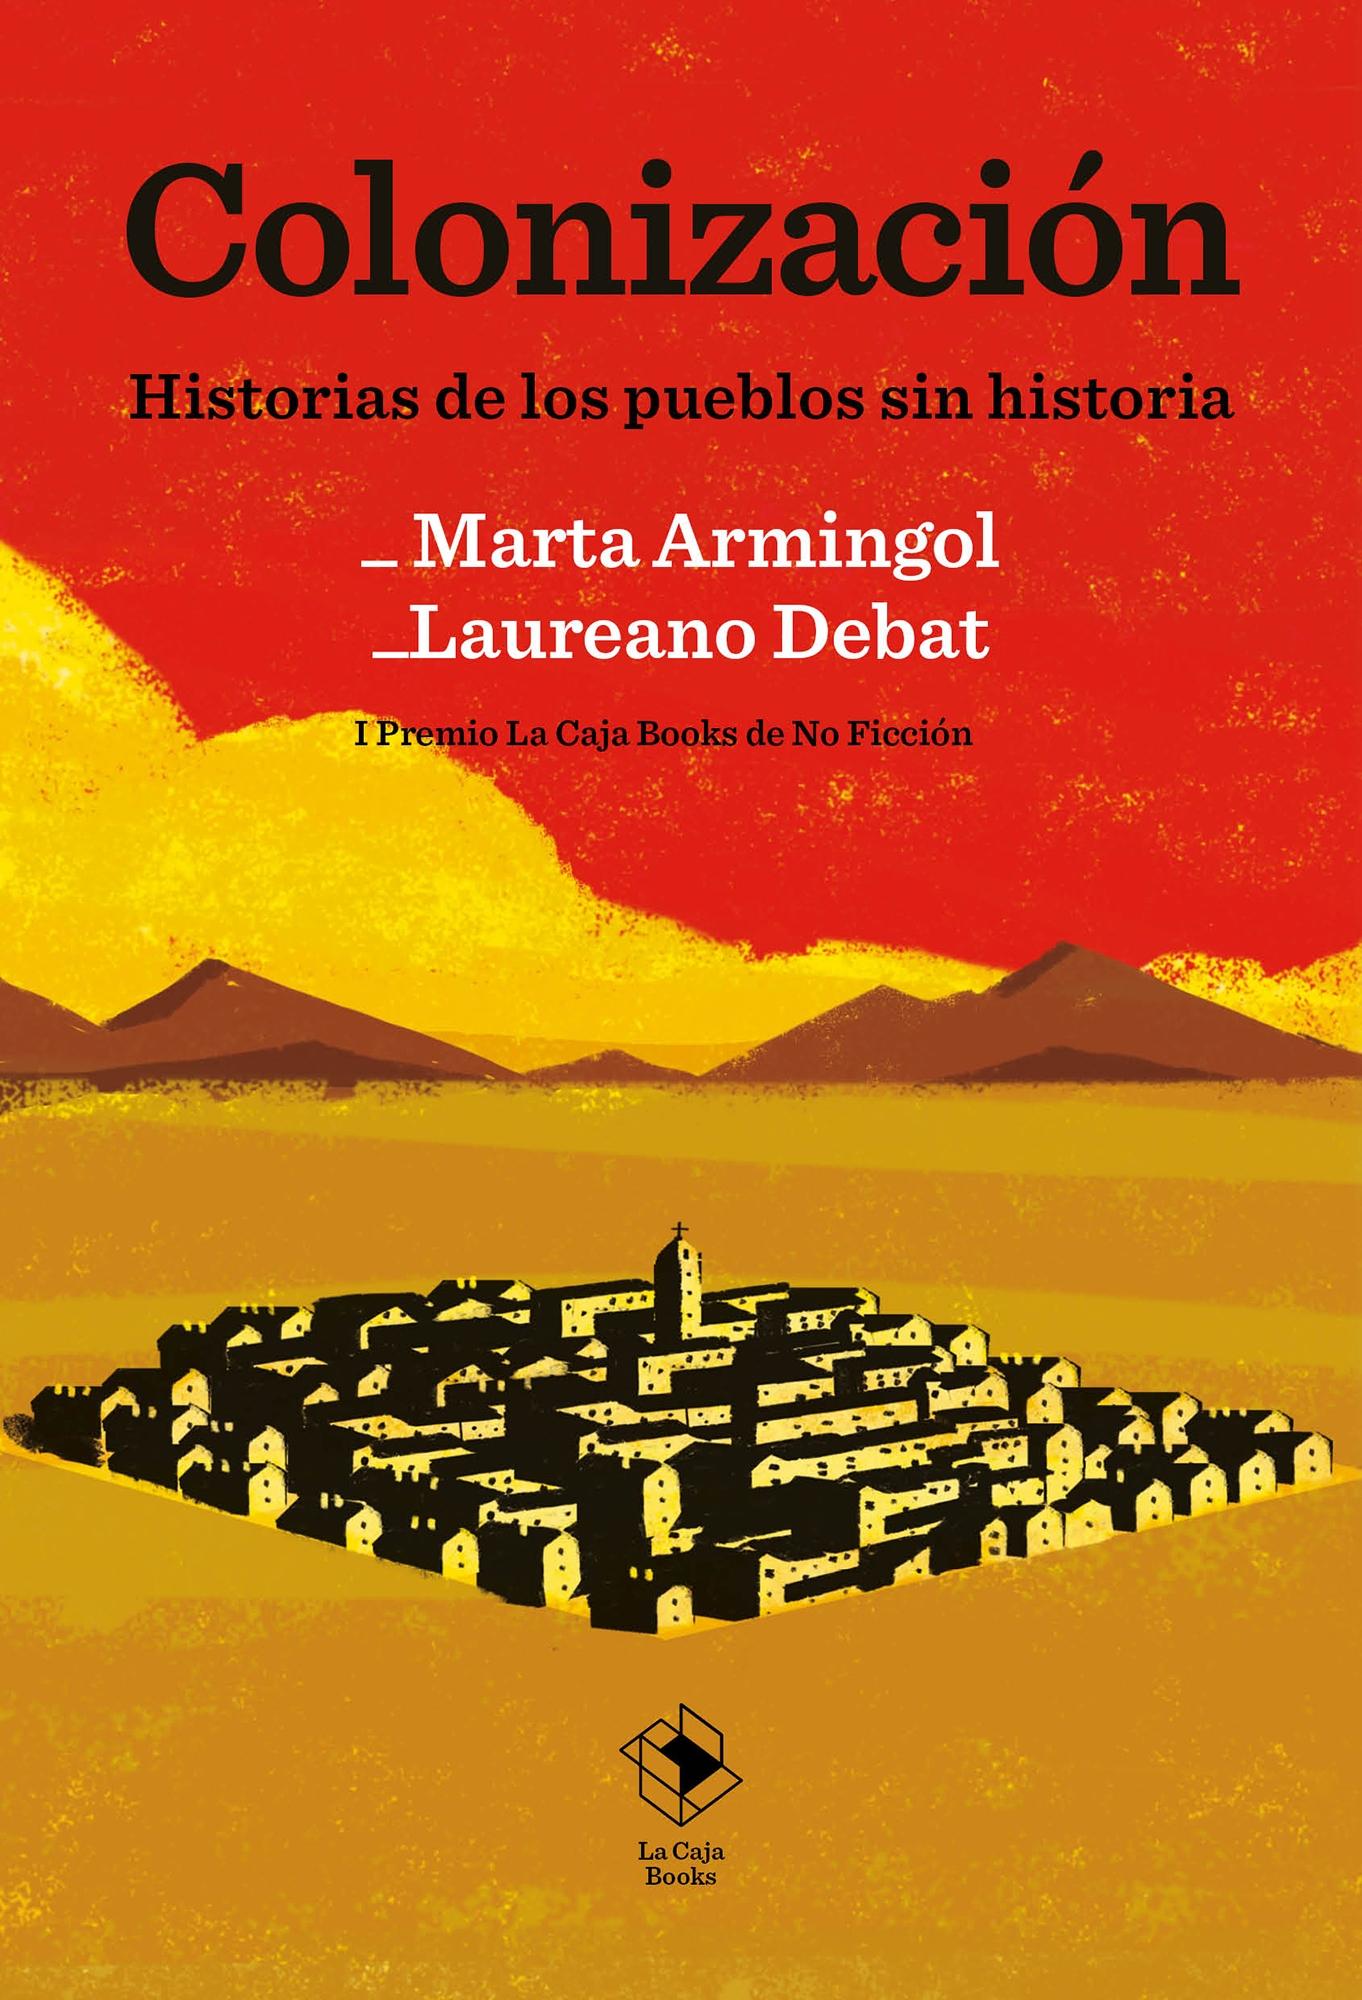 COLONIZACION "HISTORIA DE LOS PUEBLOS SIN HISTORIA"